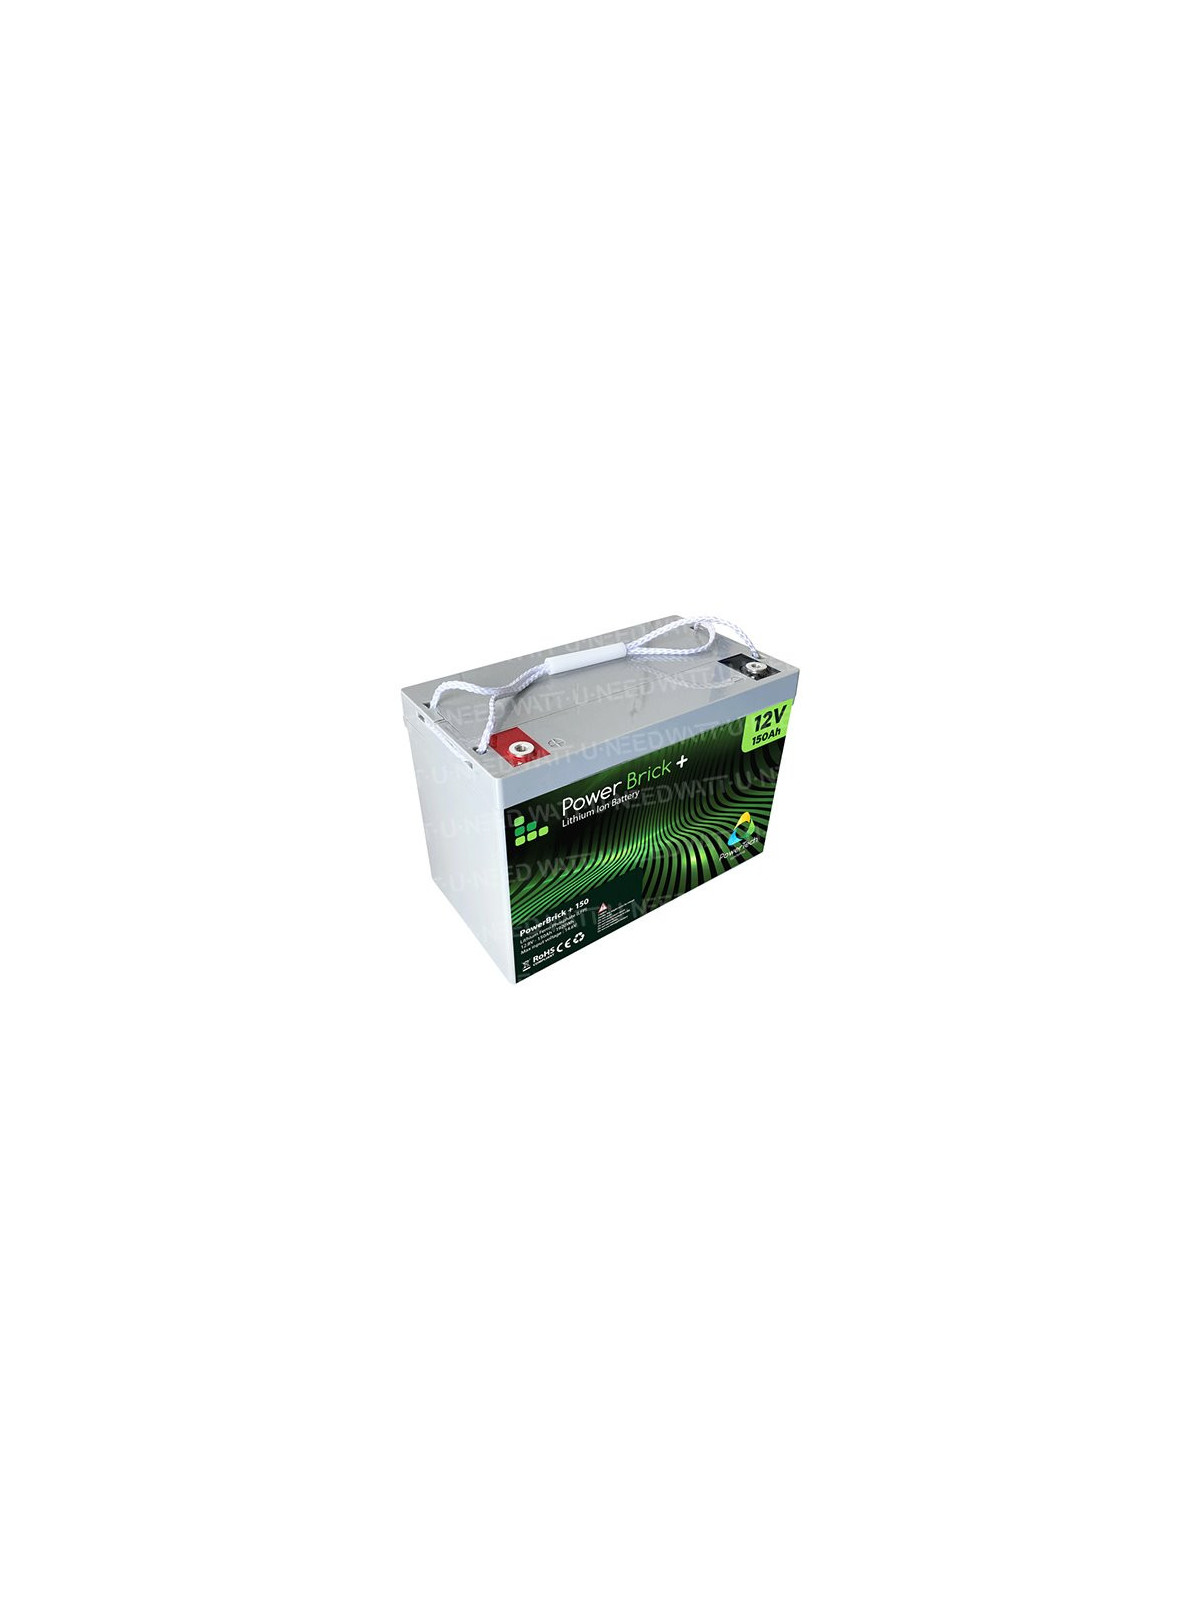 PowerBrick+ Batería de litio 12V 20Ah PB+12/20